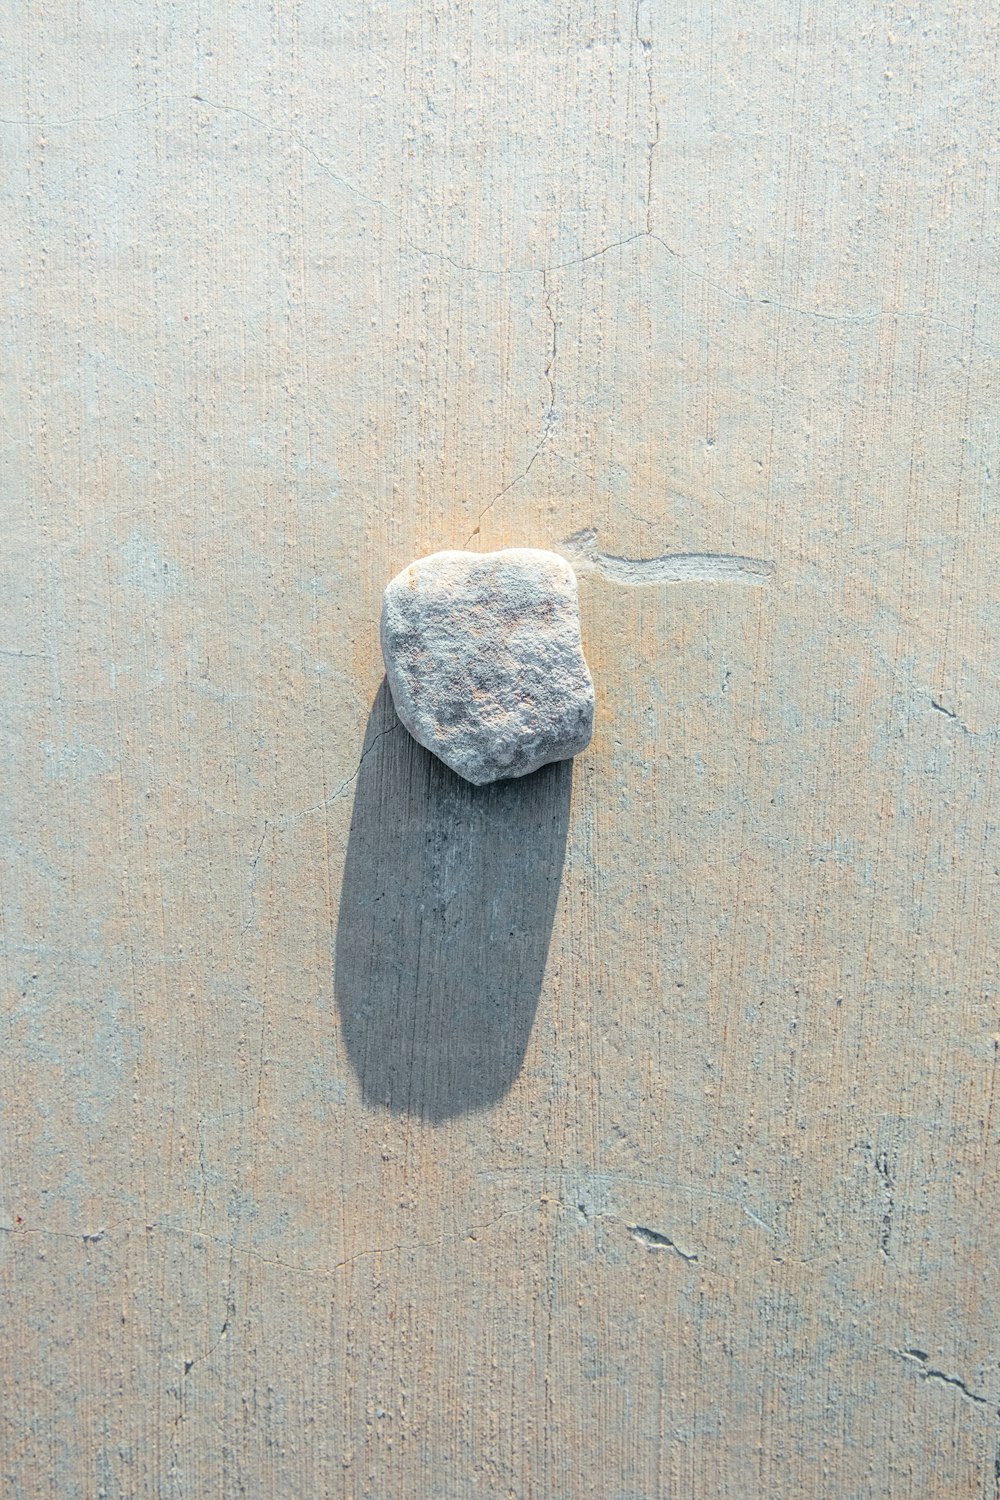 uma rocha sentada no topo de uma praia de areia